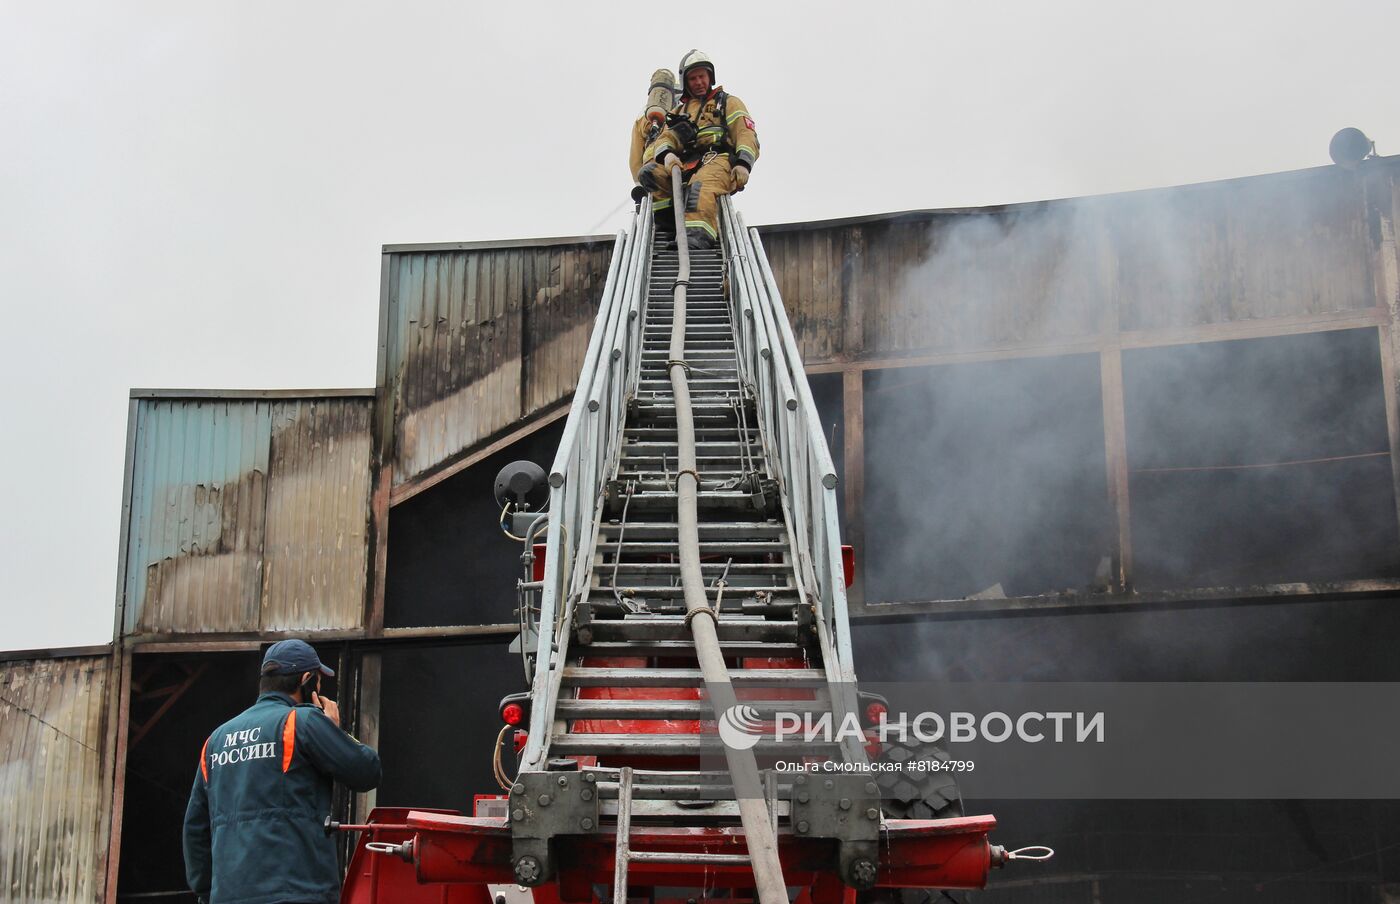 Пожар на рынке "Викалина" во Владикавказе